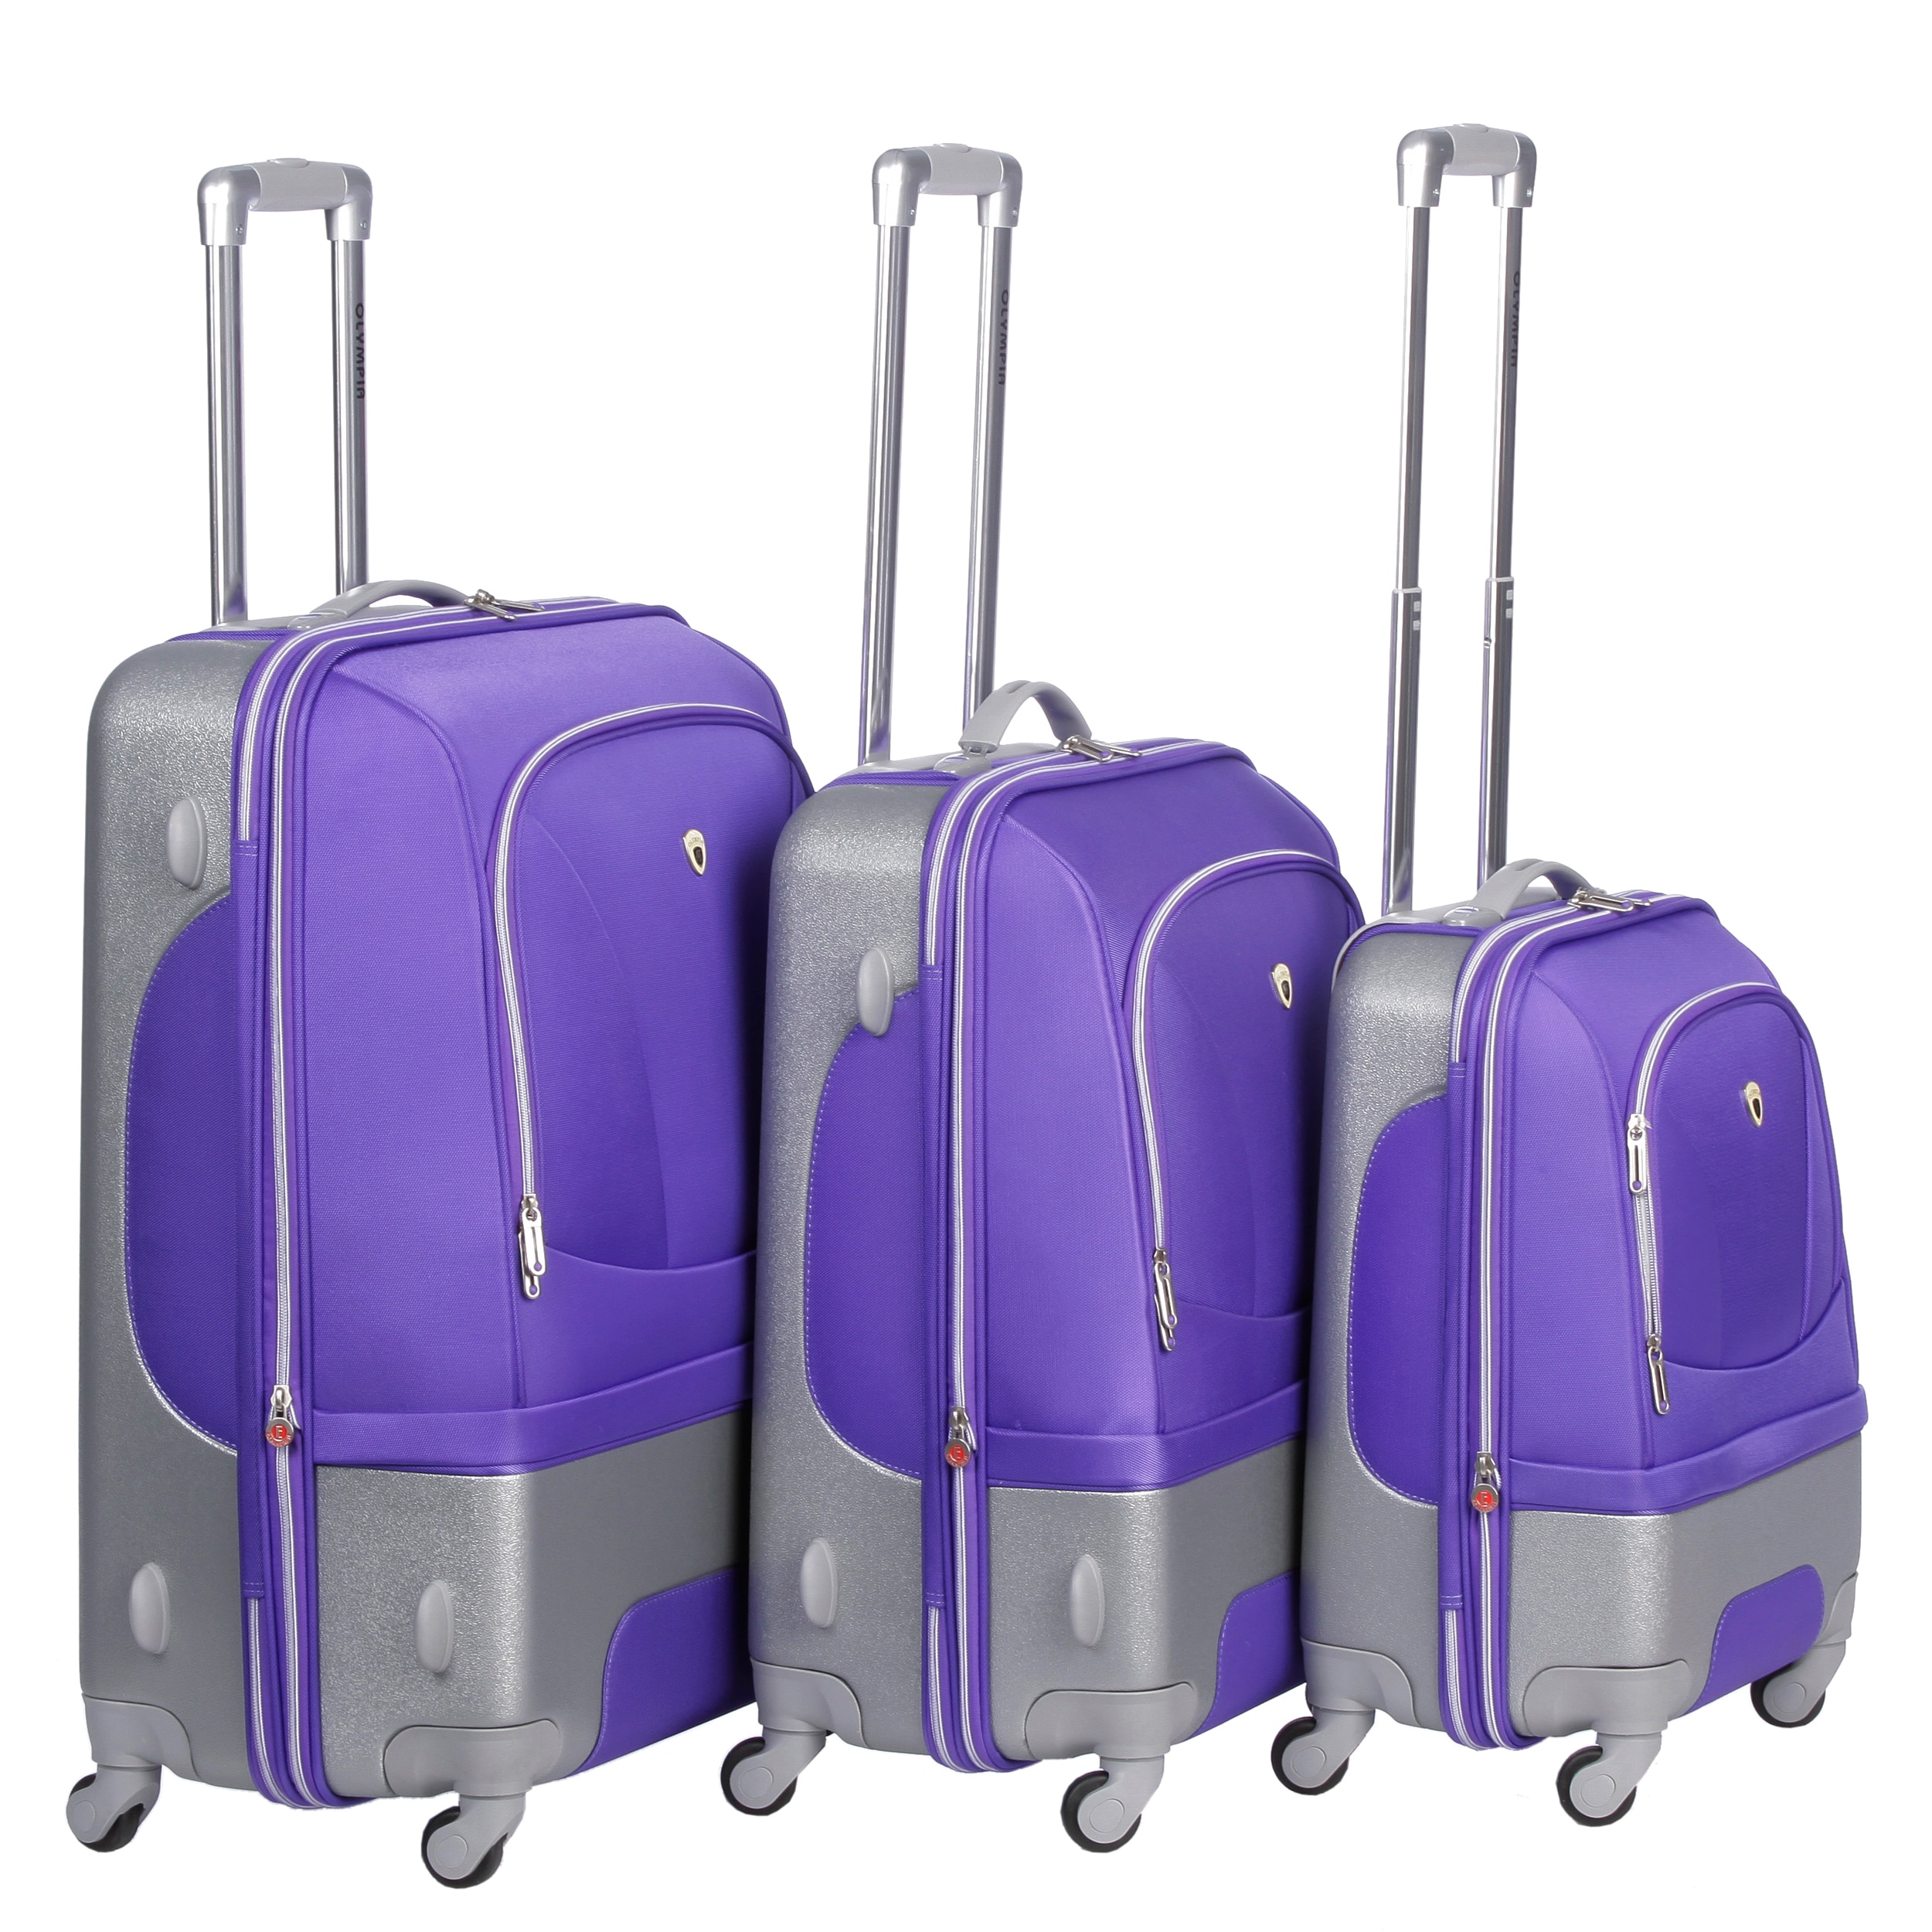 Expandable Luggage Buy Luggage Sets, Wheeled Luggage